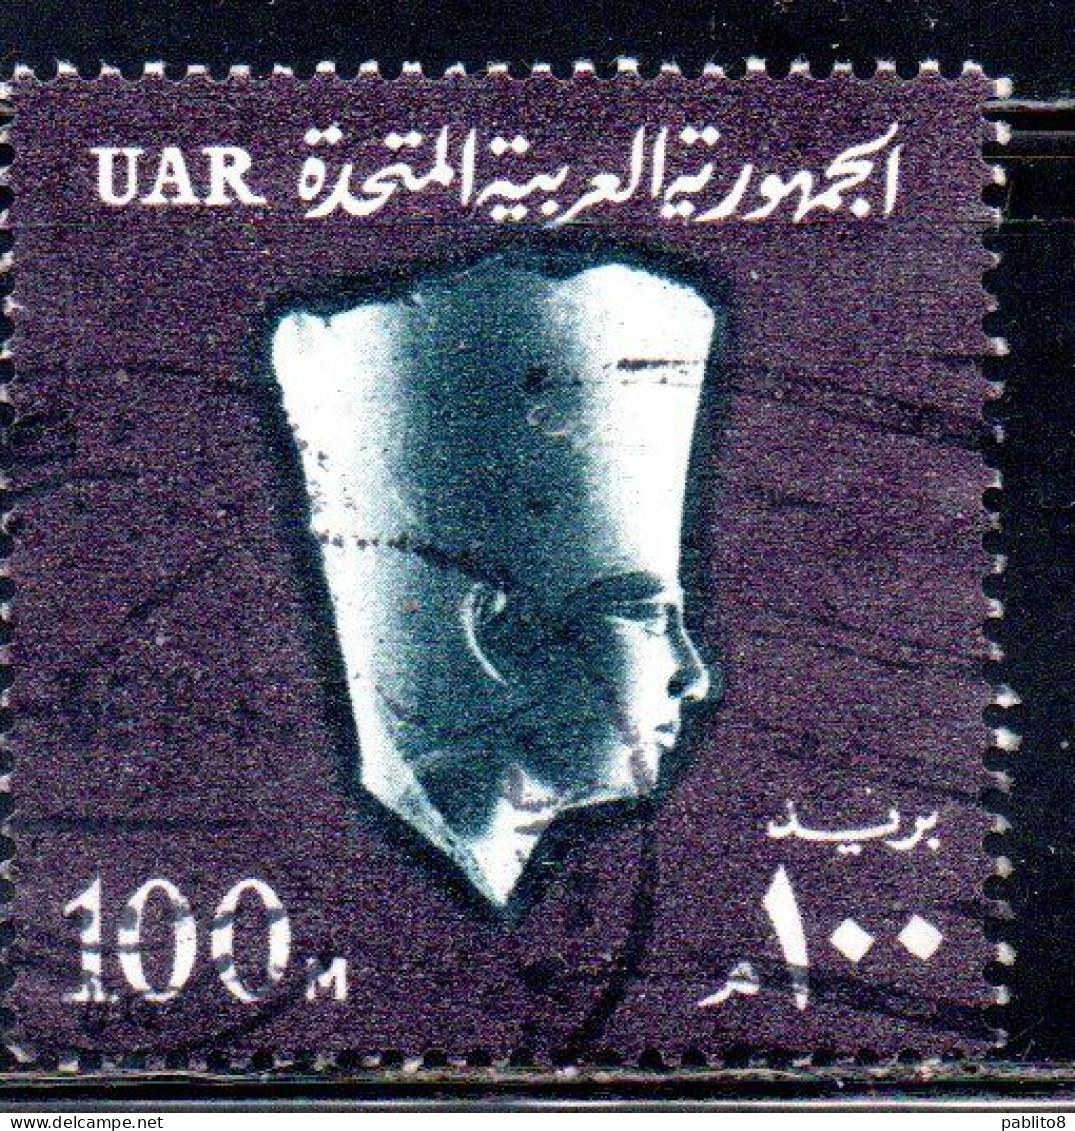 UAR EGYPT EGITTO 1964 1967 PHARAOH USERKAF 5th DYNASTY 100m USED USATO OBLITERE' - Usati